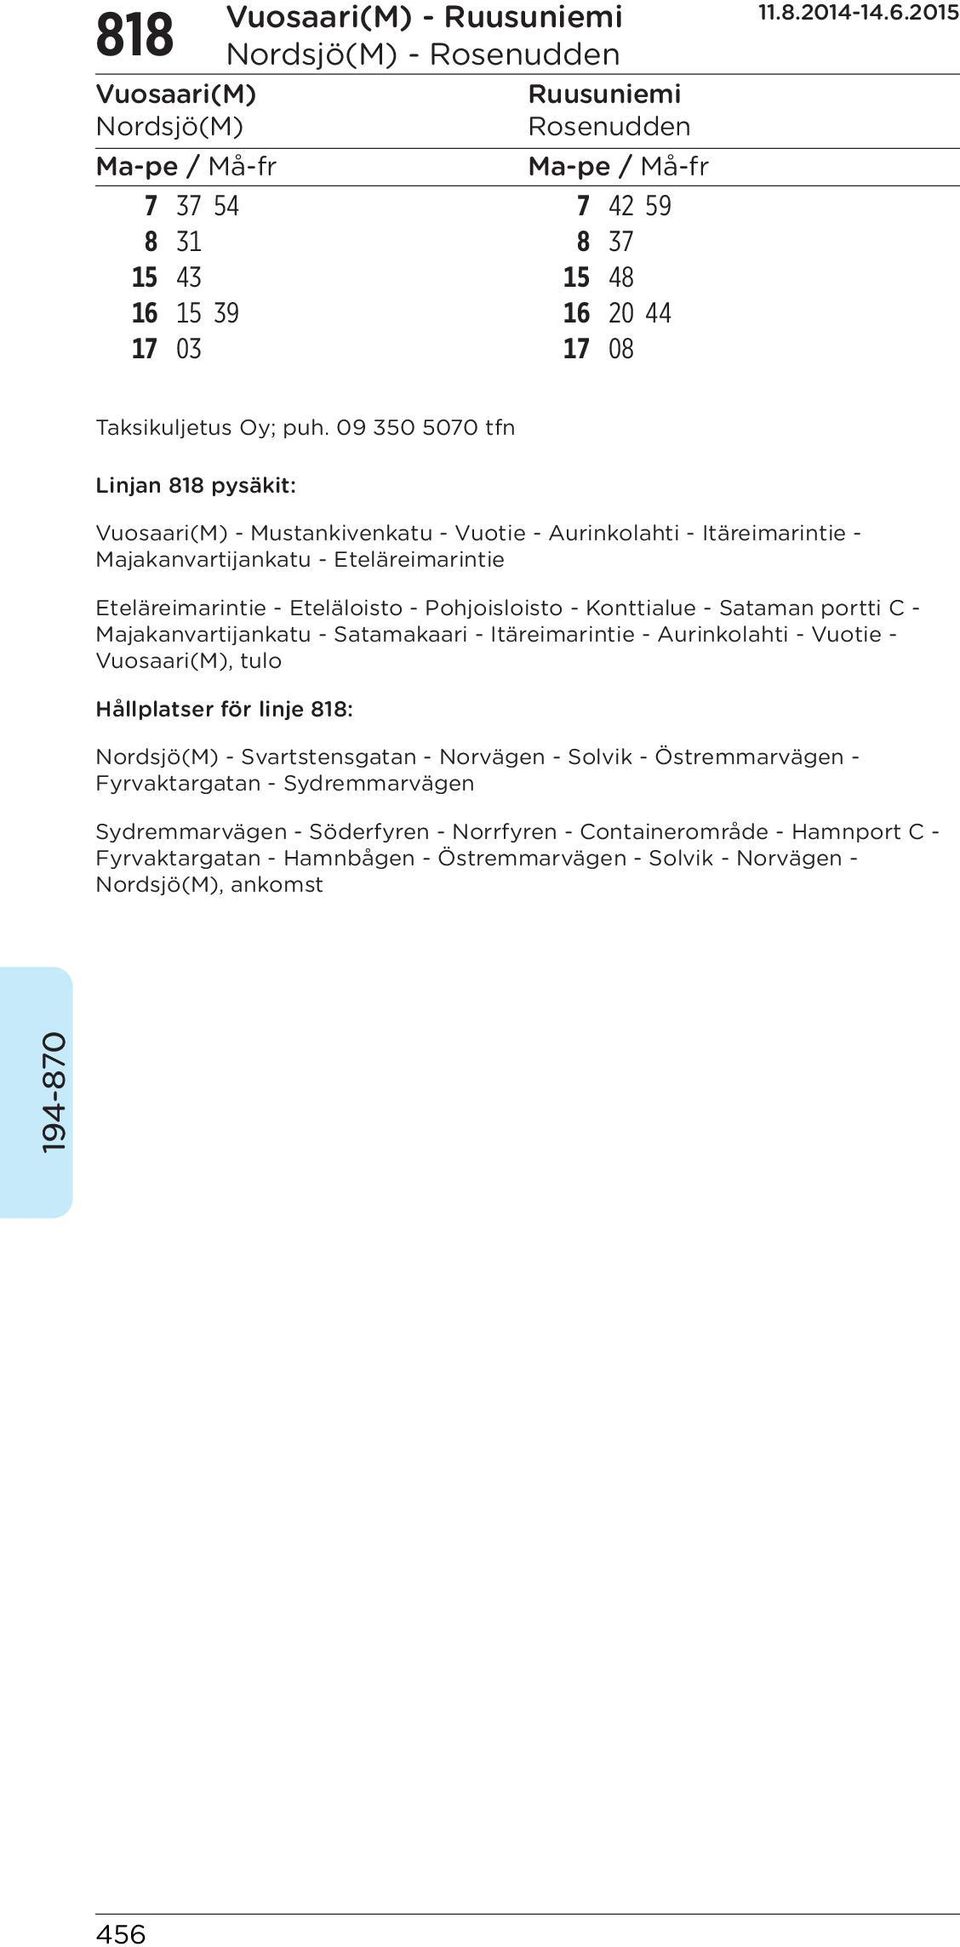 Majakanvartijankatu - Satamakaari - Itäreimarintie - Aurinkolahti - Vuotie -, tulo Hållplatser för linje 818: - Svartstensgatan - Norvägen - Solvik - Östremmarvägen -